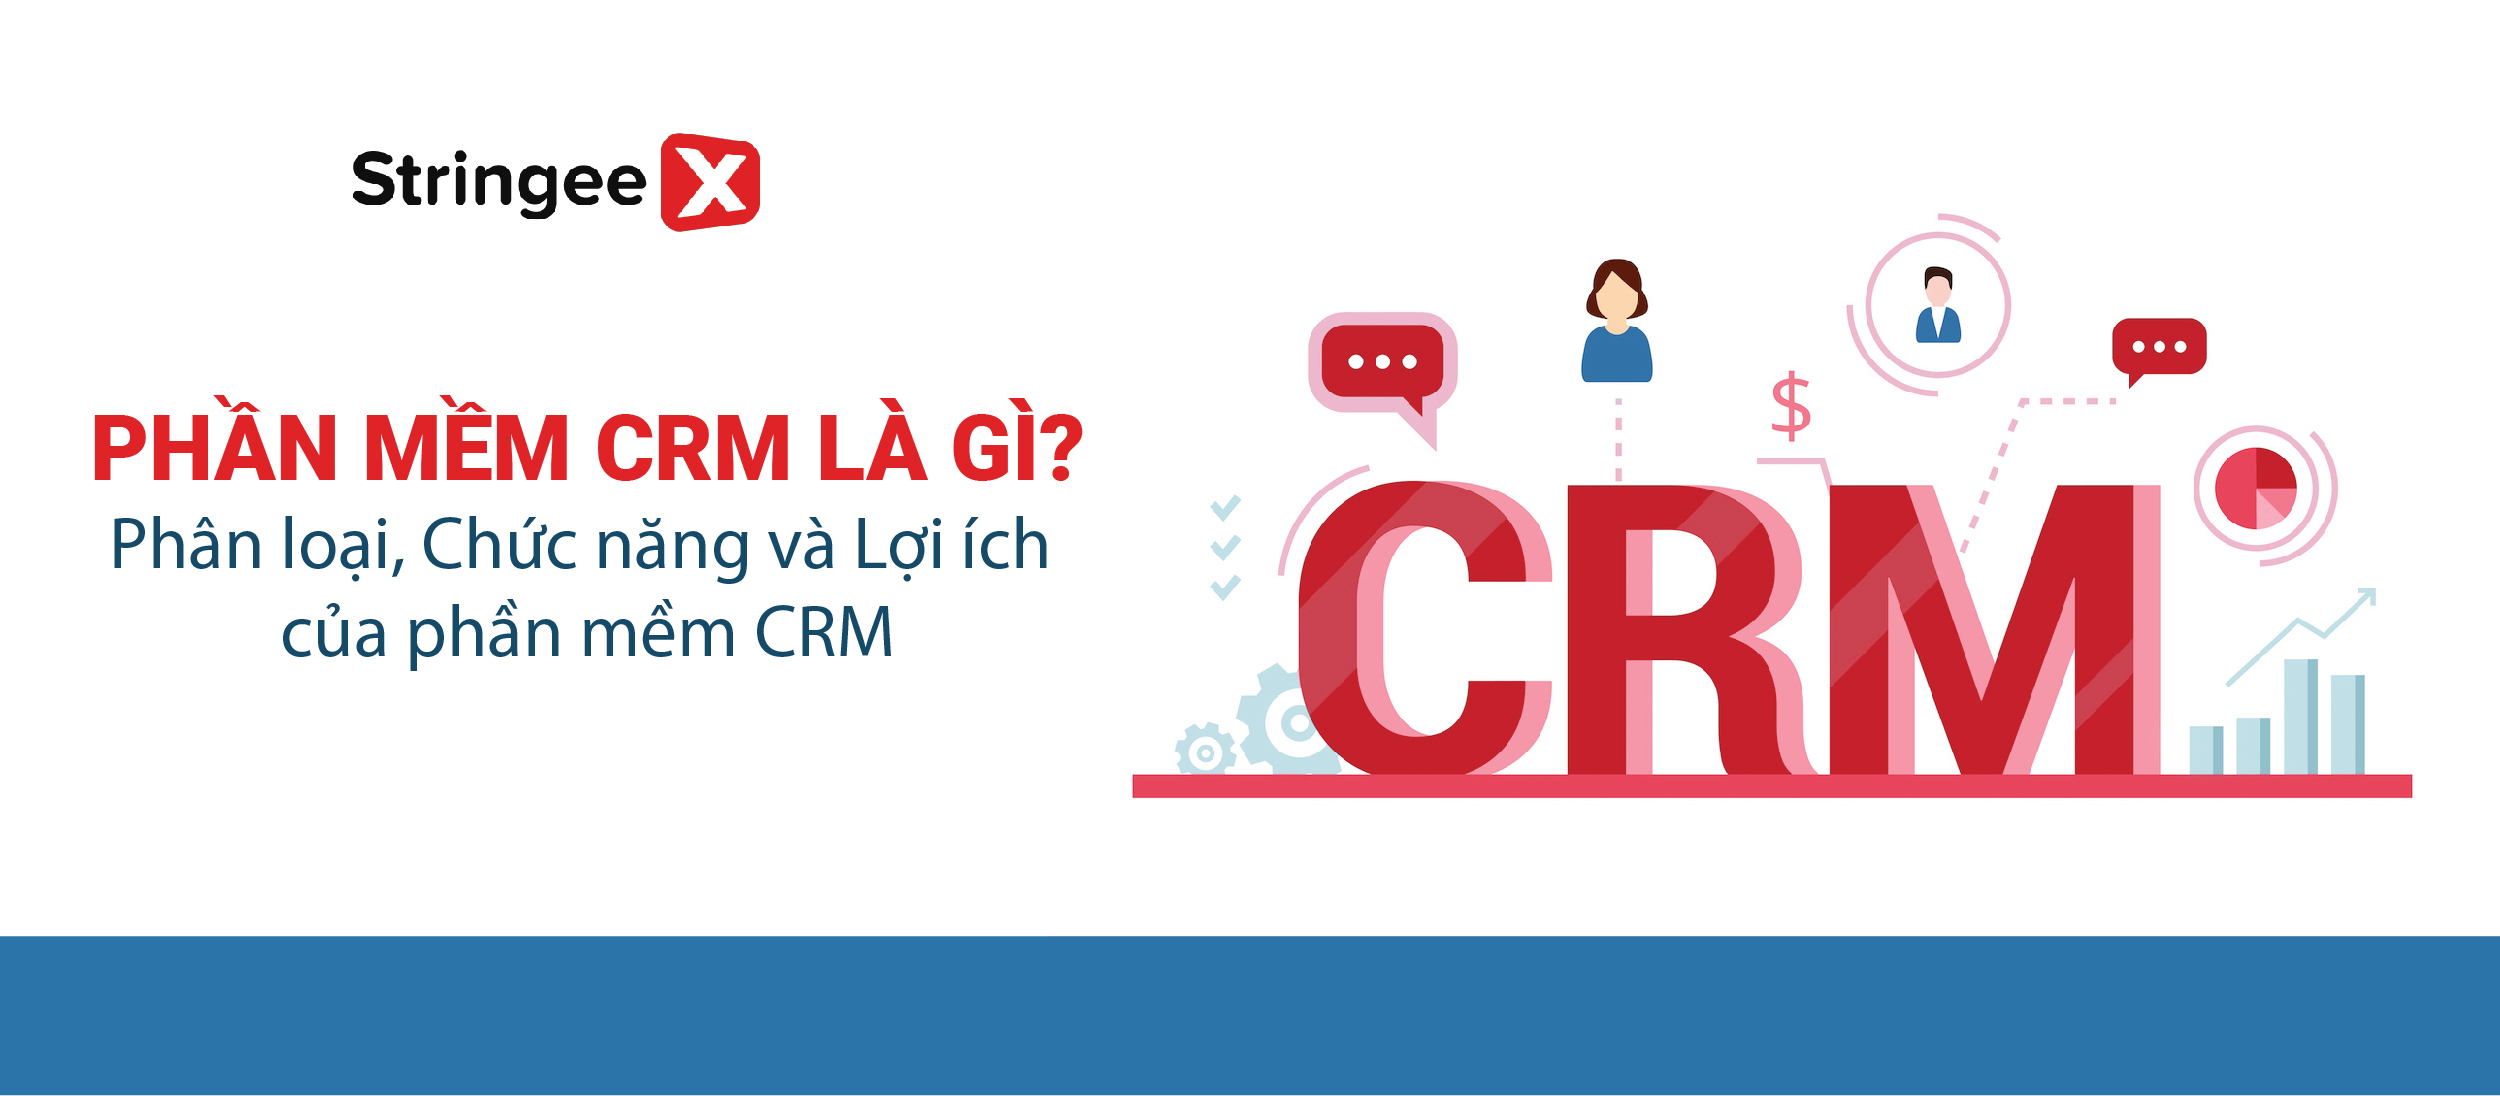 Phần mềm CRM: Định nghĩa, phân loại và vai trò trong vận hành doanh nghiệp